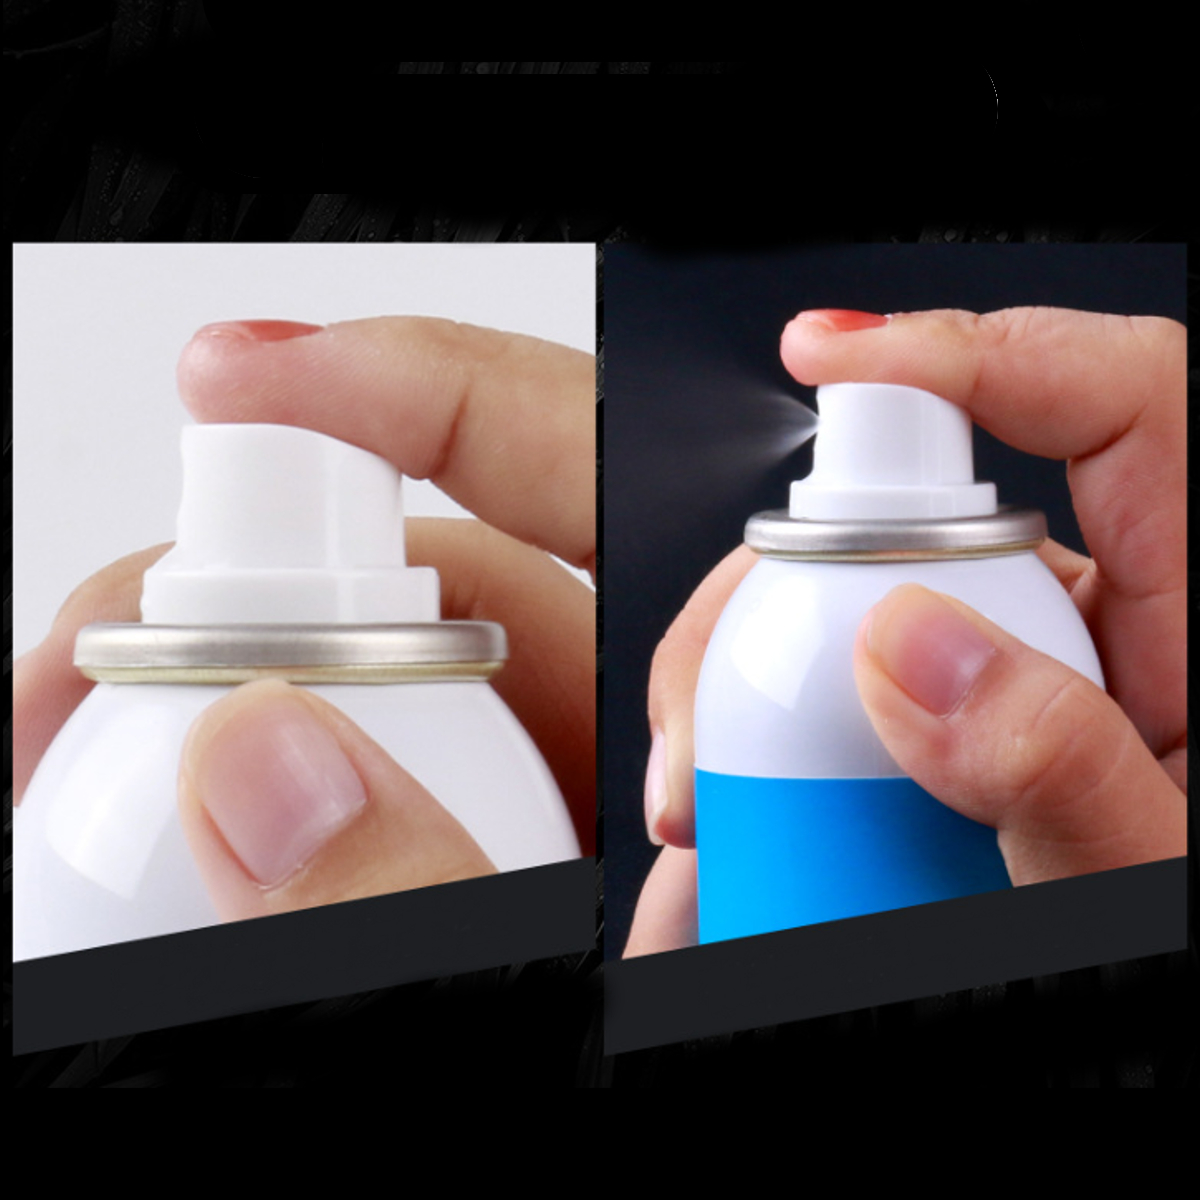 120ml-Sprayer-Mist-Water-Face-Toner-Hydrating-Moisturizing-Whitening-Oil-Skin-Care-1375034